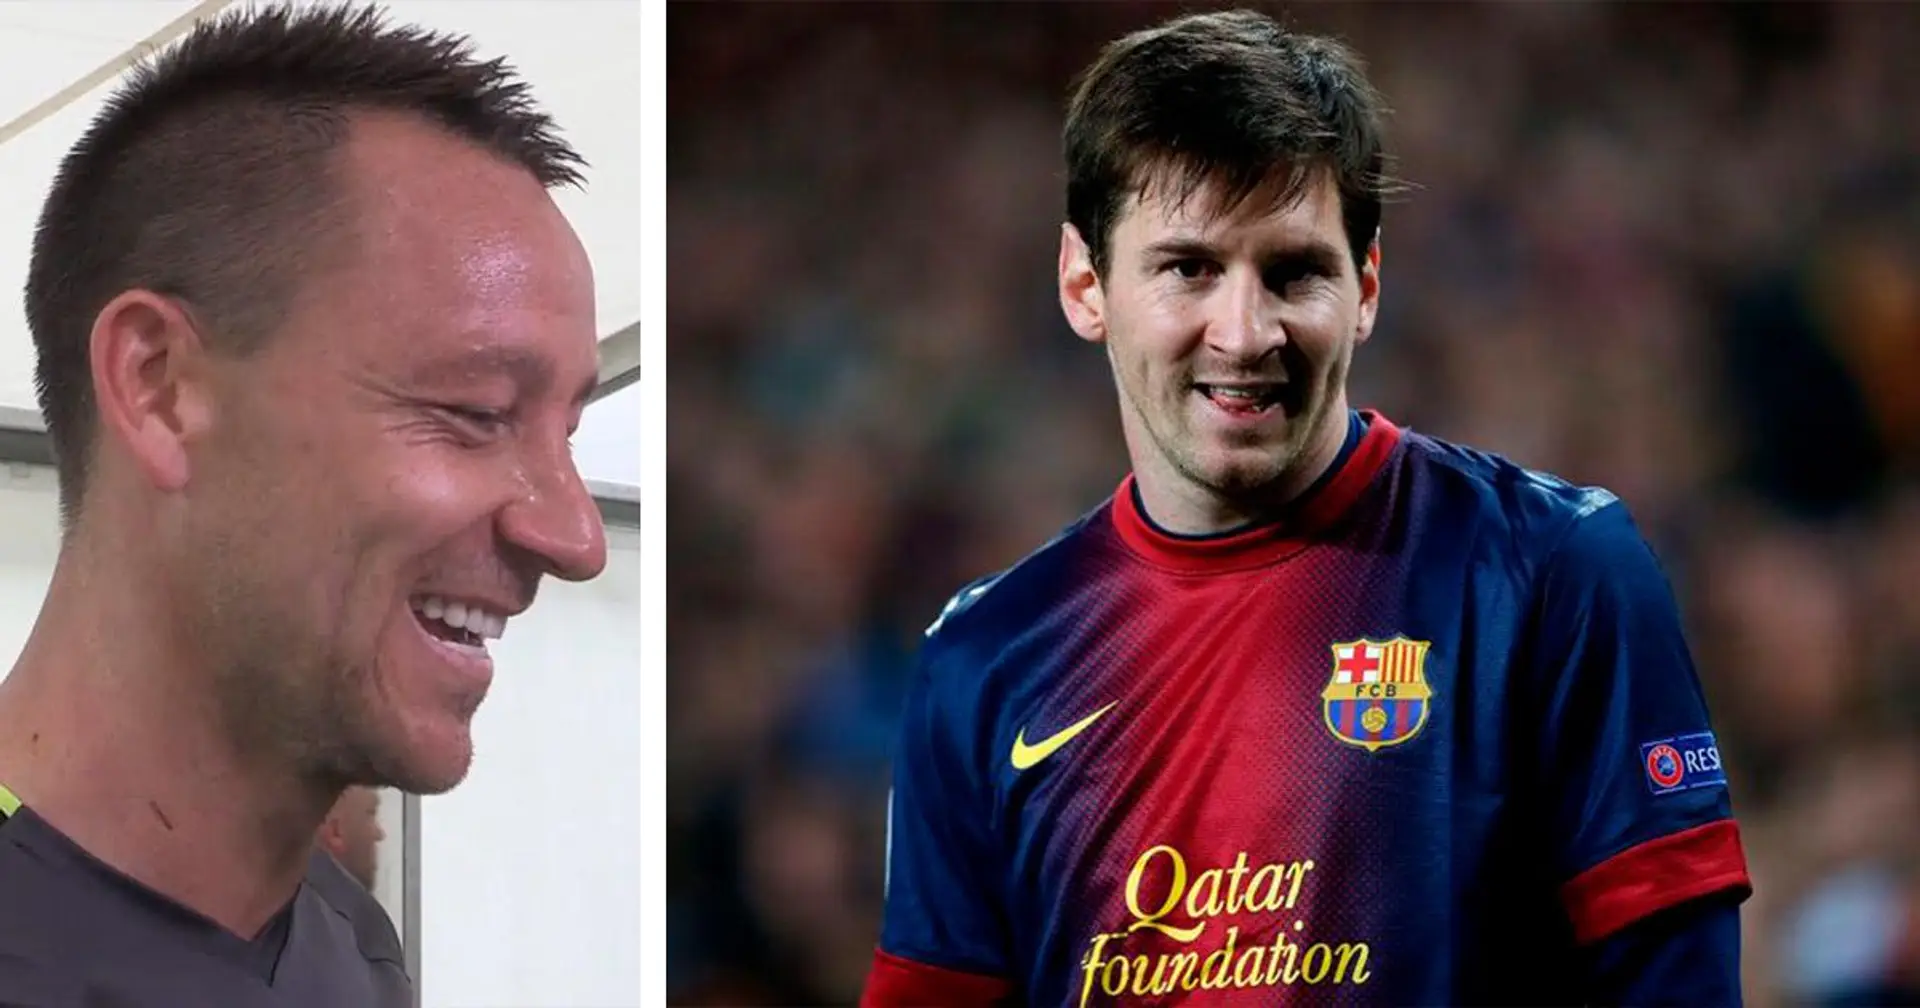 "Mes enfants l'adorent'': comment John Terry a manqué de superlatifs pour décrire Leo Messi comme footballeur et personne